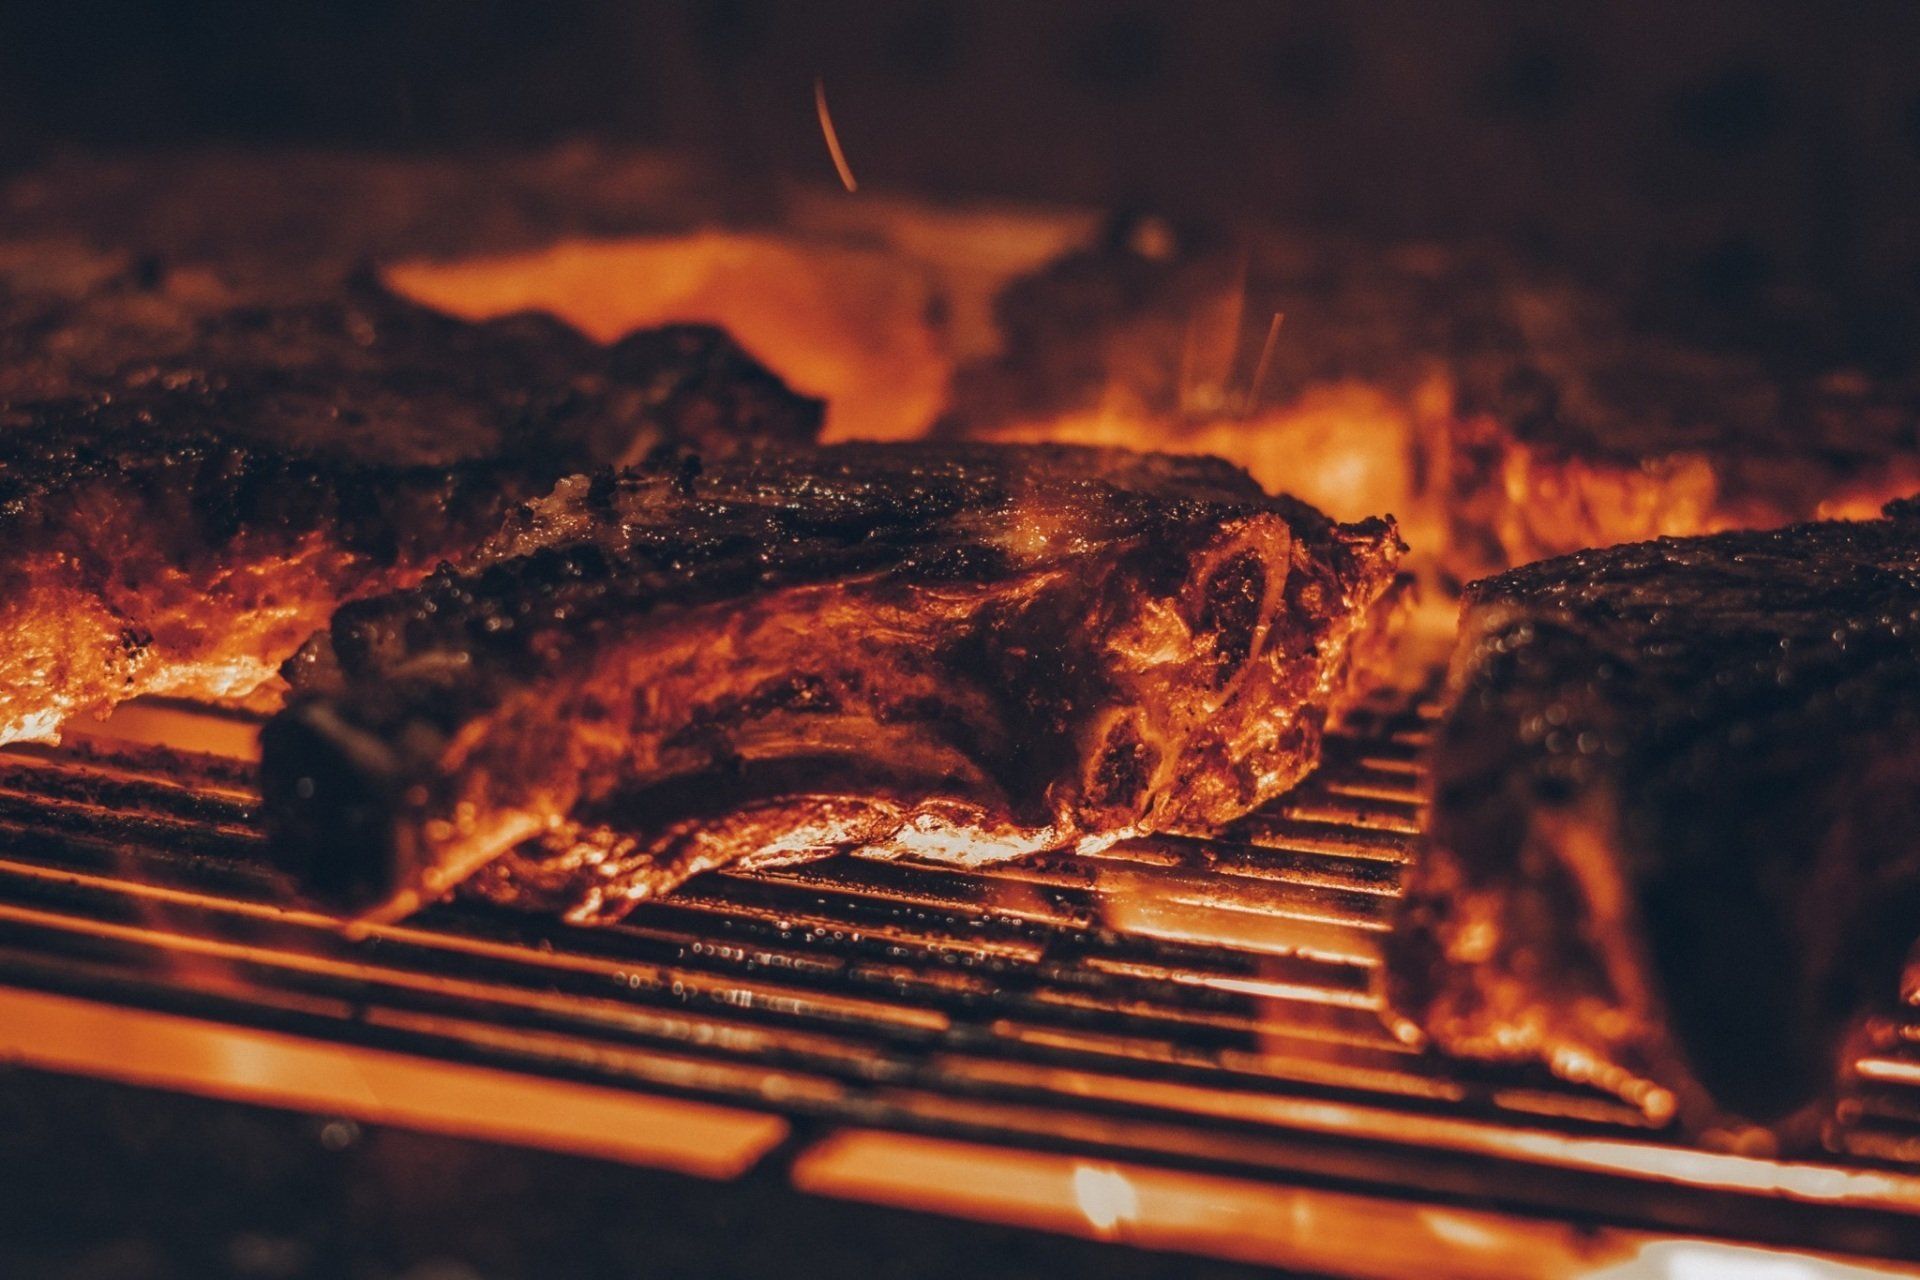 Grill houtskooloven van x-oven perfect voor vlees te grillen